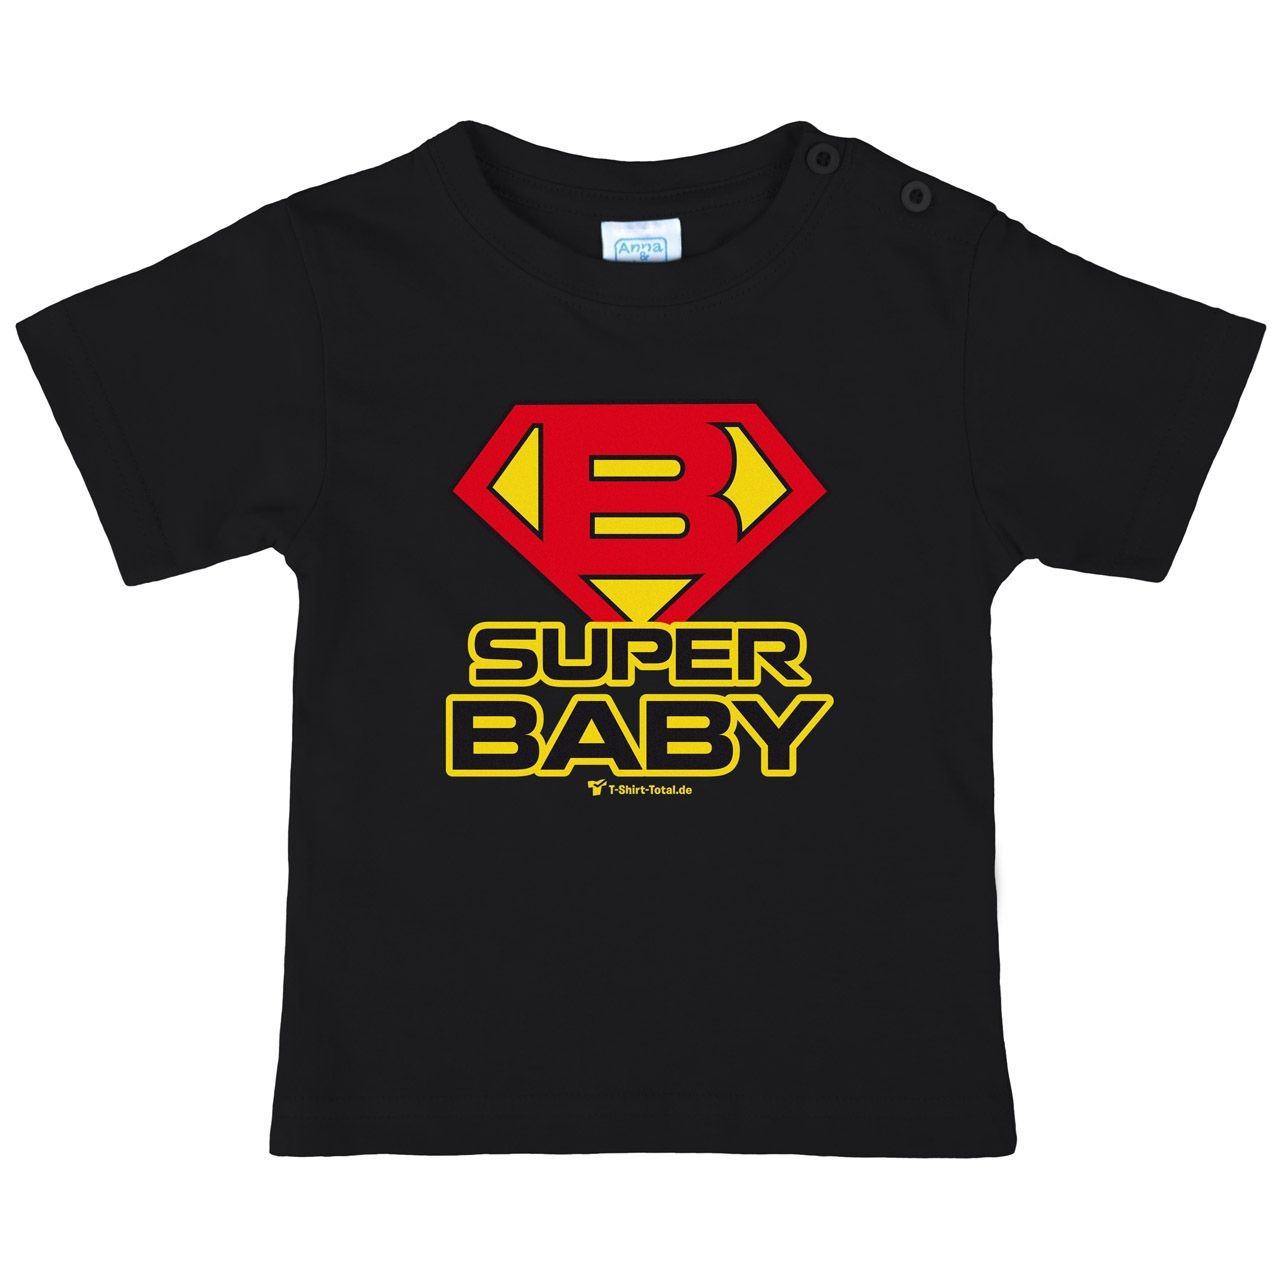 Super Baby Kinder T-Shirt schwarz 92